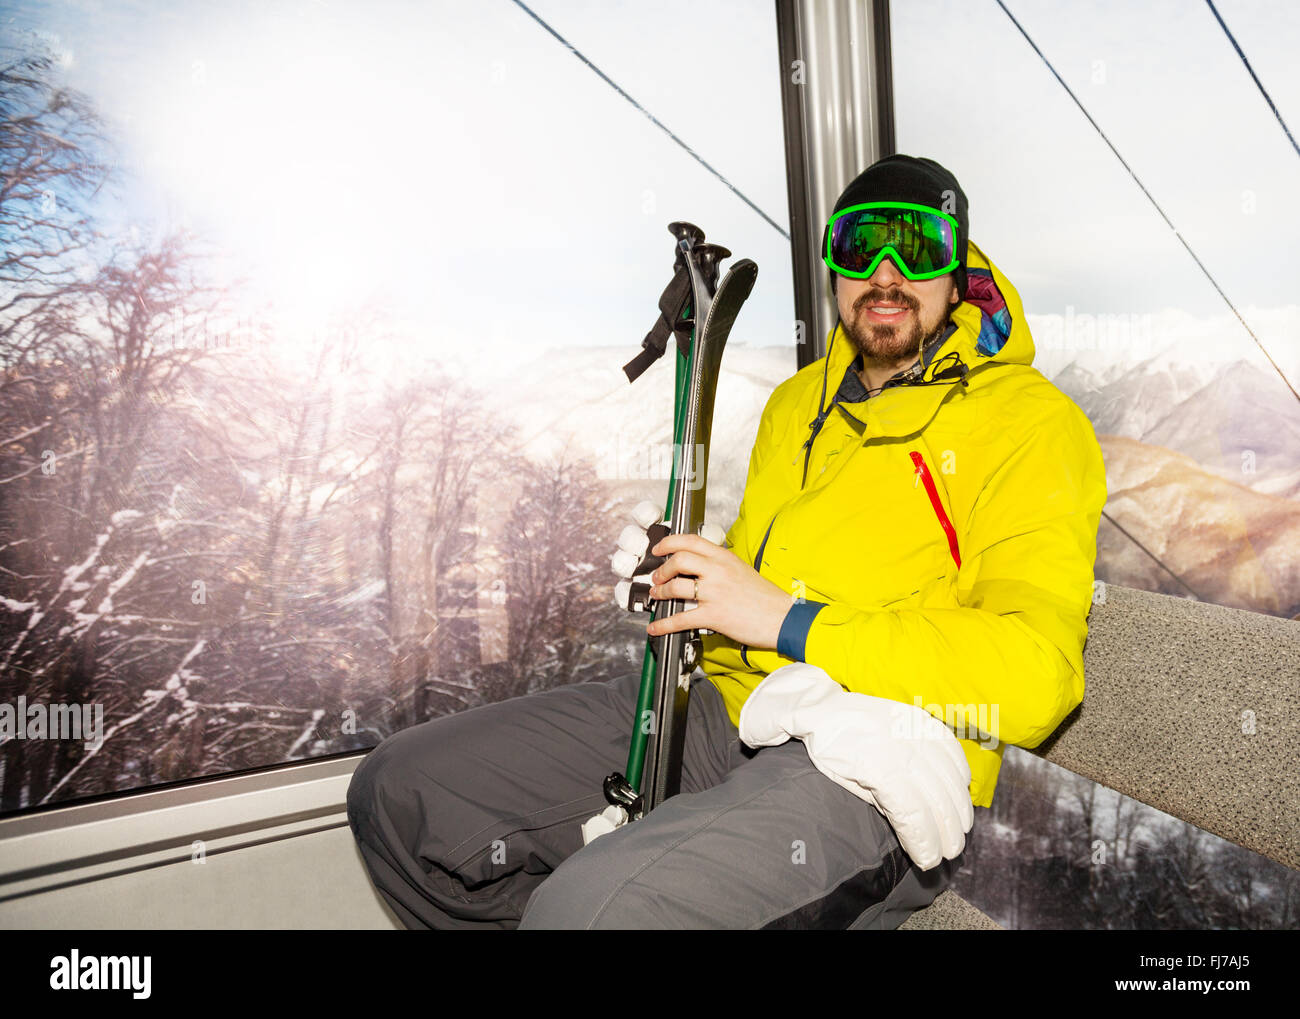 Mann Skifahrer im Skilift Seilbahn Kabine sitzen Stockfoto